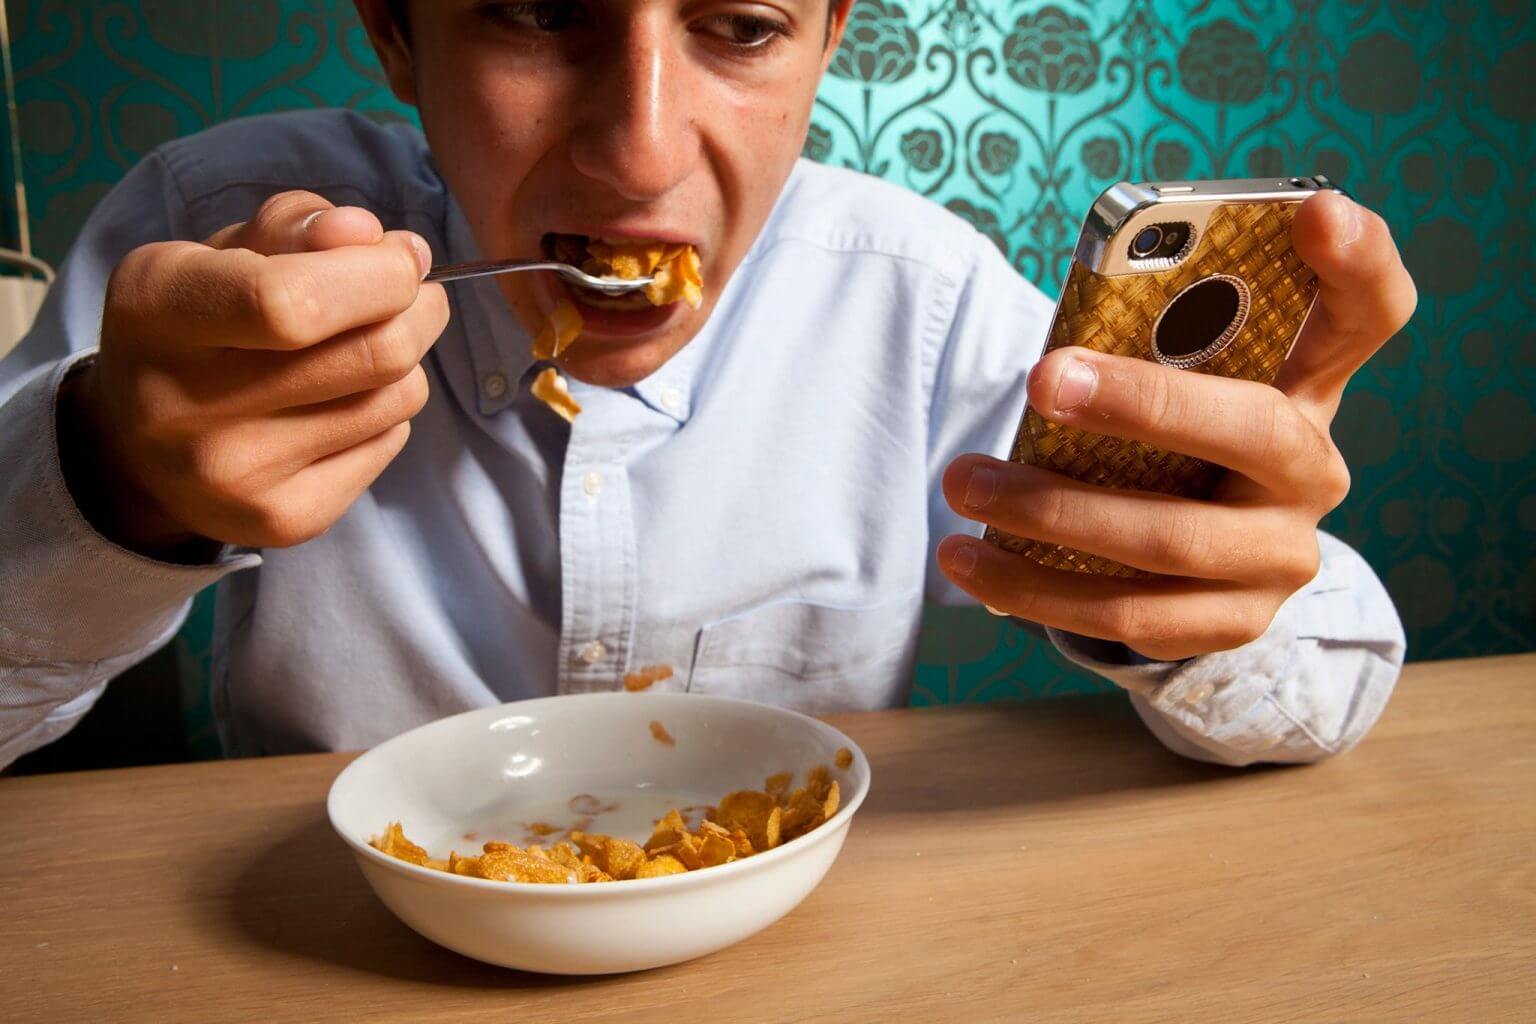 Весь день сижу в телефоне. Кушает с телефоном. Человек кушает. Человек с мобильником за едой. Человек кушает с телефоном.